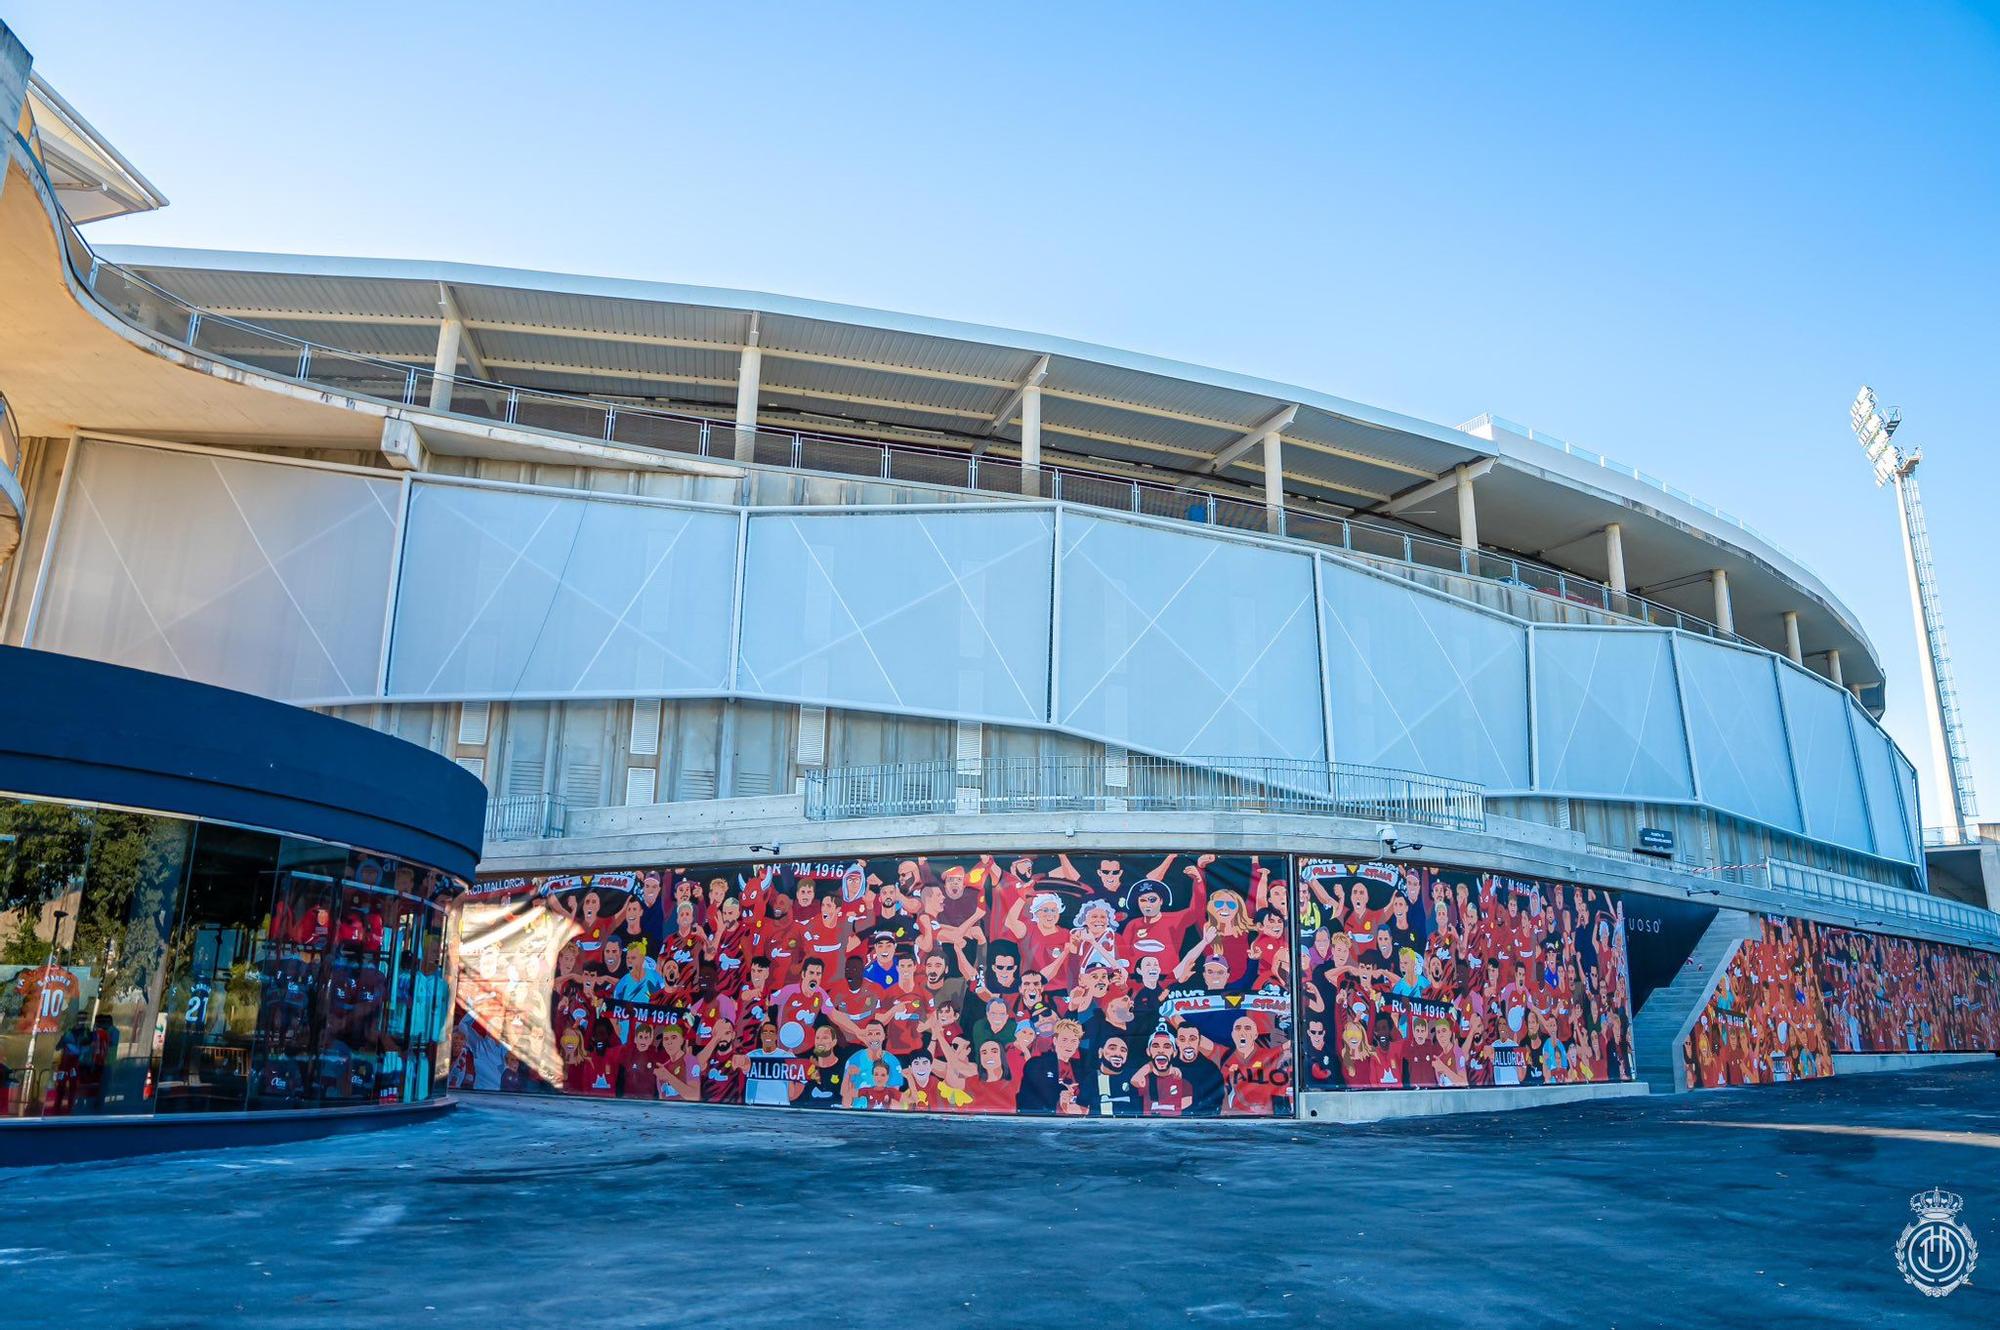 Las mejores fotos del estadio de Son Moix tras la reforma, el renovado campo del RCD Mallorca: